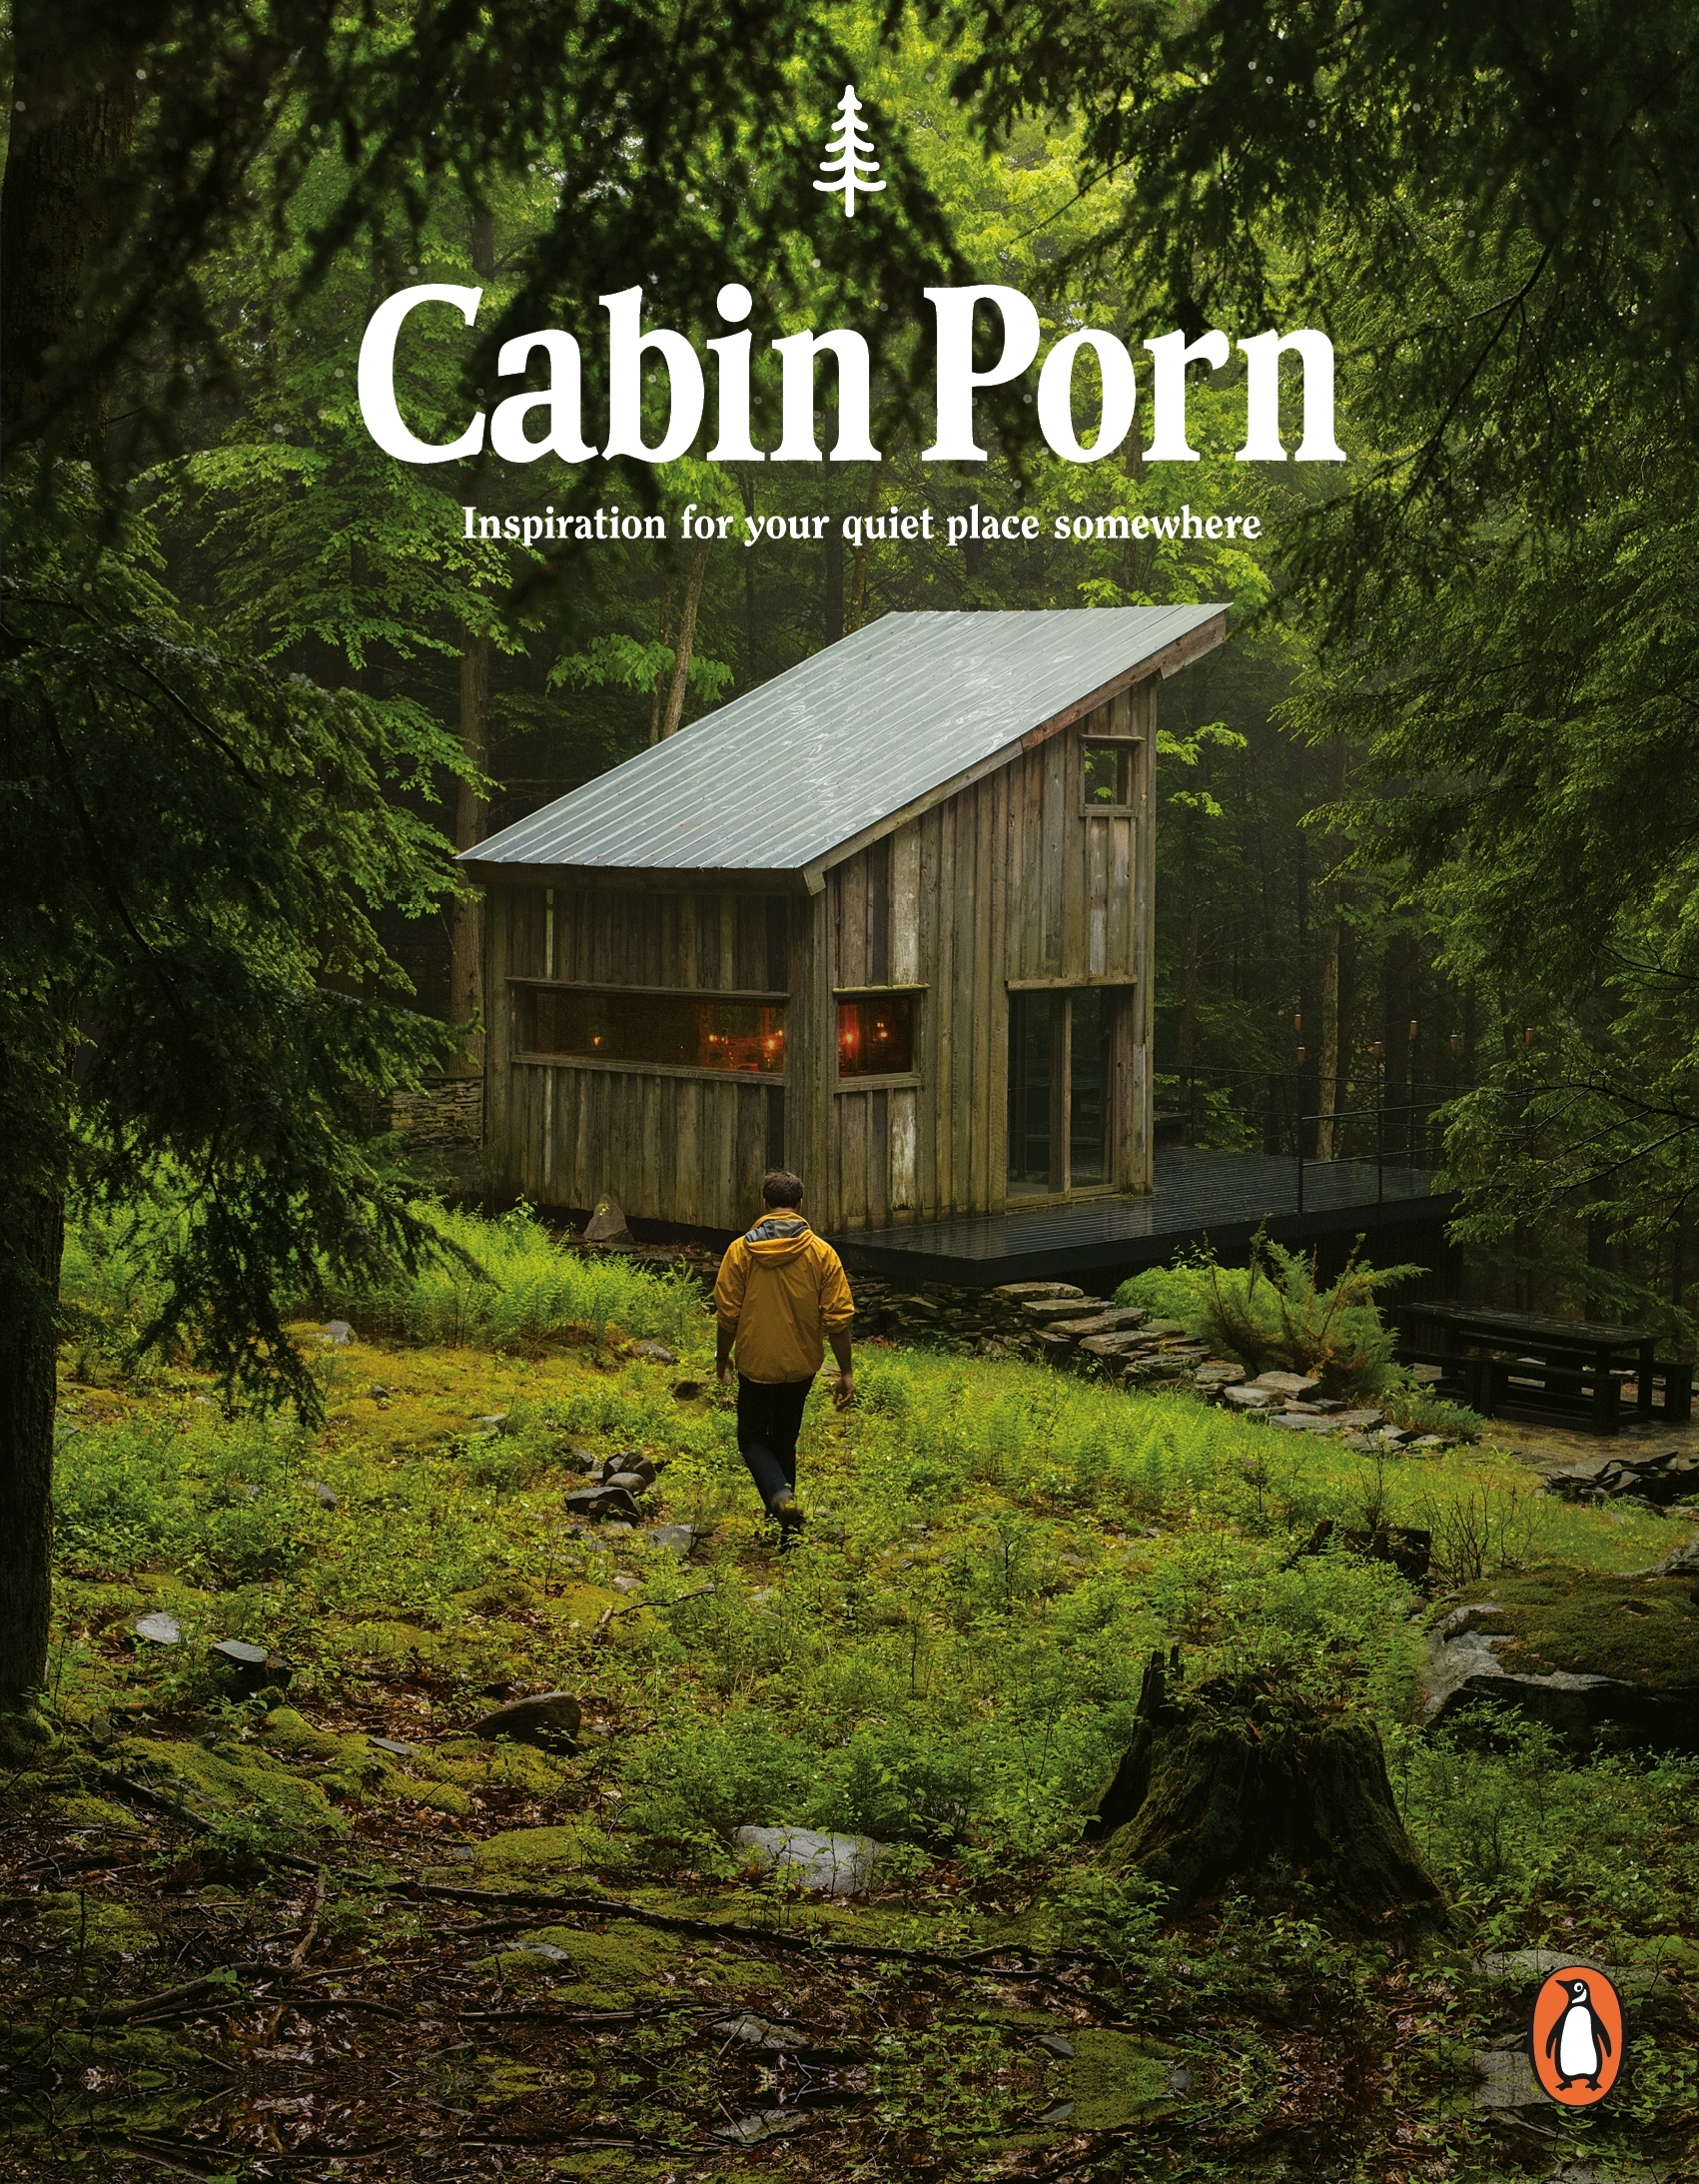 Porn Books - Cabin Porn by Zach Klein - Penguin Books Australia